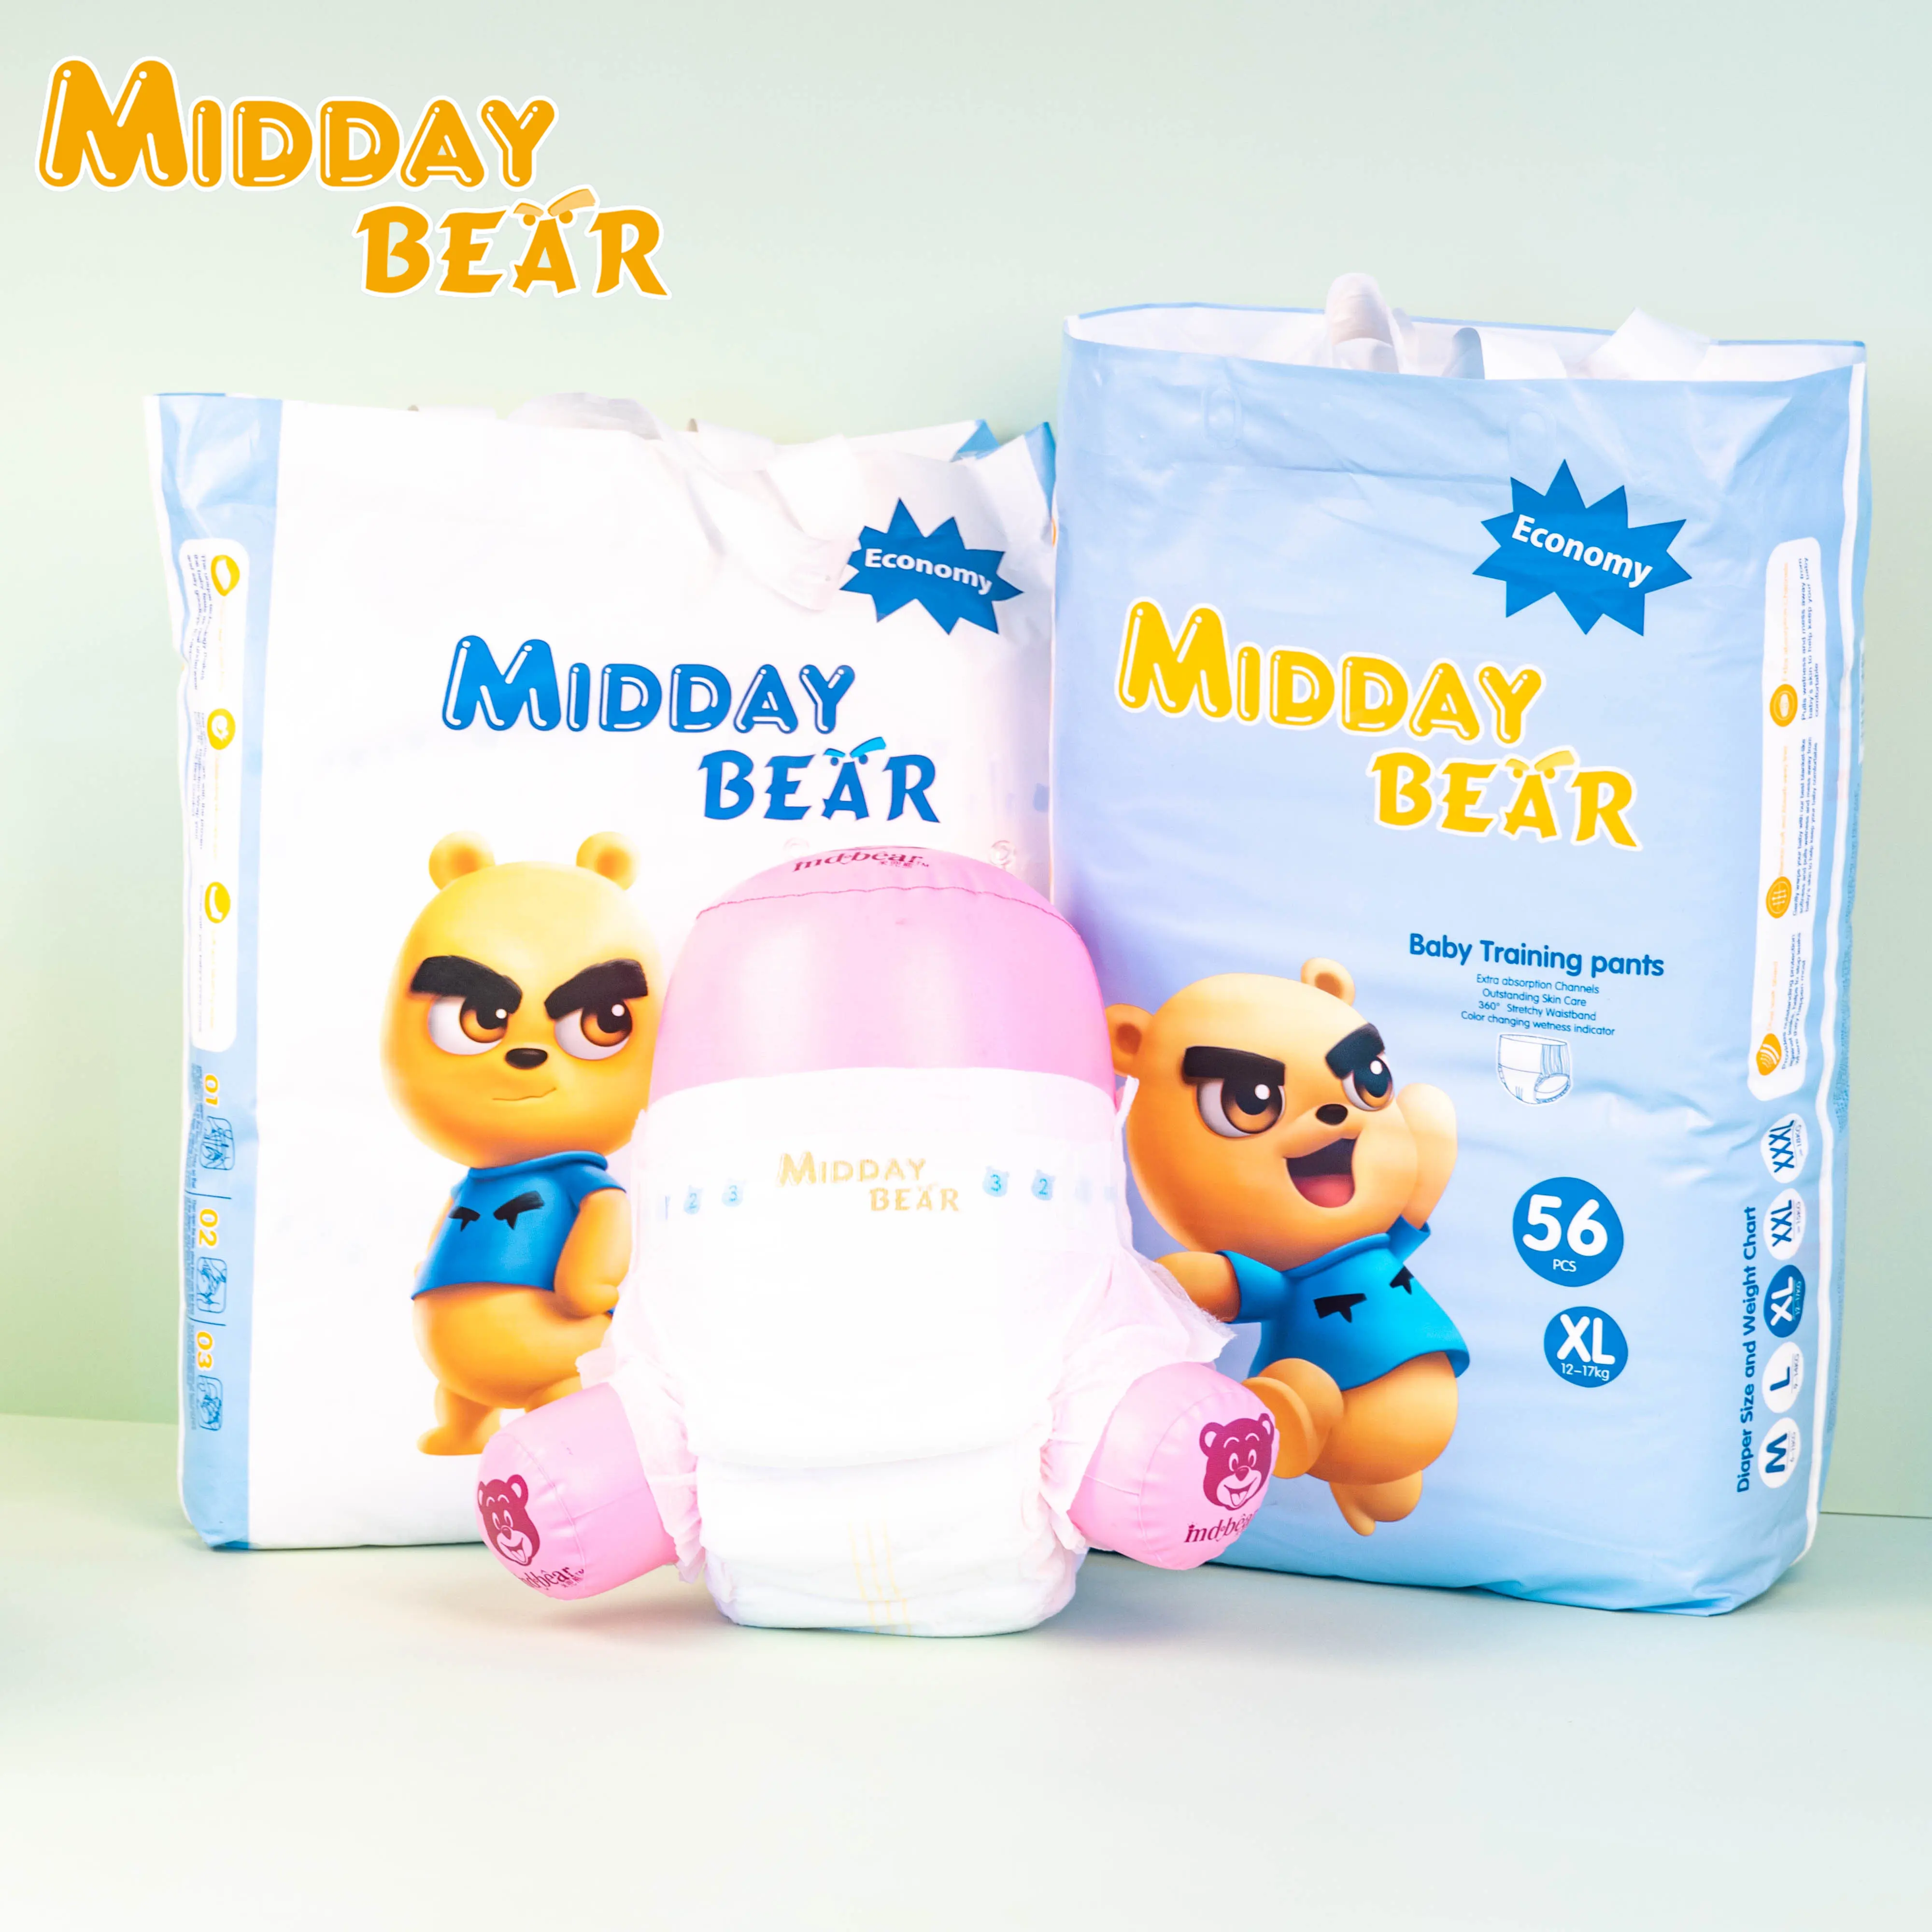 Midday Bear SoftCare pañales desechables de papel de calidad A fabricantes al por mayor en China